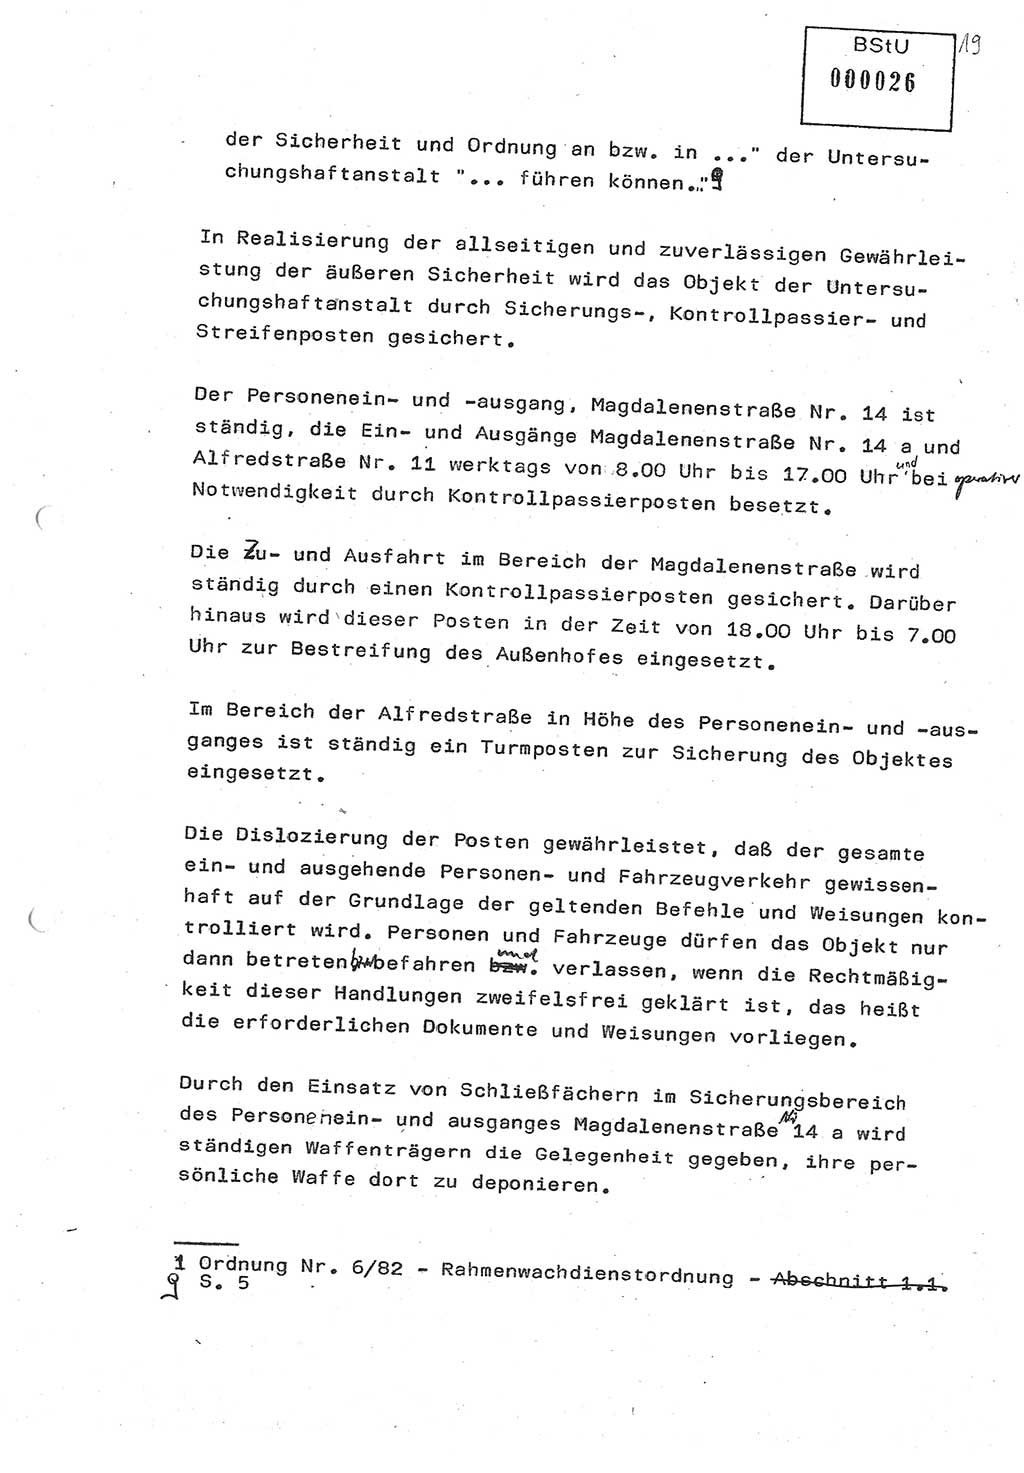 Diplomarbeit (Entwurf) Oberleutnant Peter Parke (Abt. ⅩⅣ), Ministerium für Staatssicherheit (MfS) [Deutsche Demokratische Republik (DDR)], Juristische Hochschule (JHS), Geheime Verschlußsache (GVS) o001-98/86, Potsdam 1986, Seite 26 (Dipl.-Arb. MfS DDR JHS GVS o001-98/86 1986, S. 26)